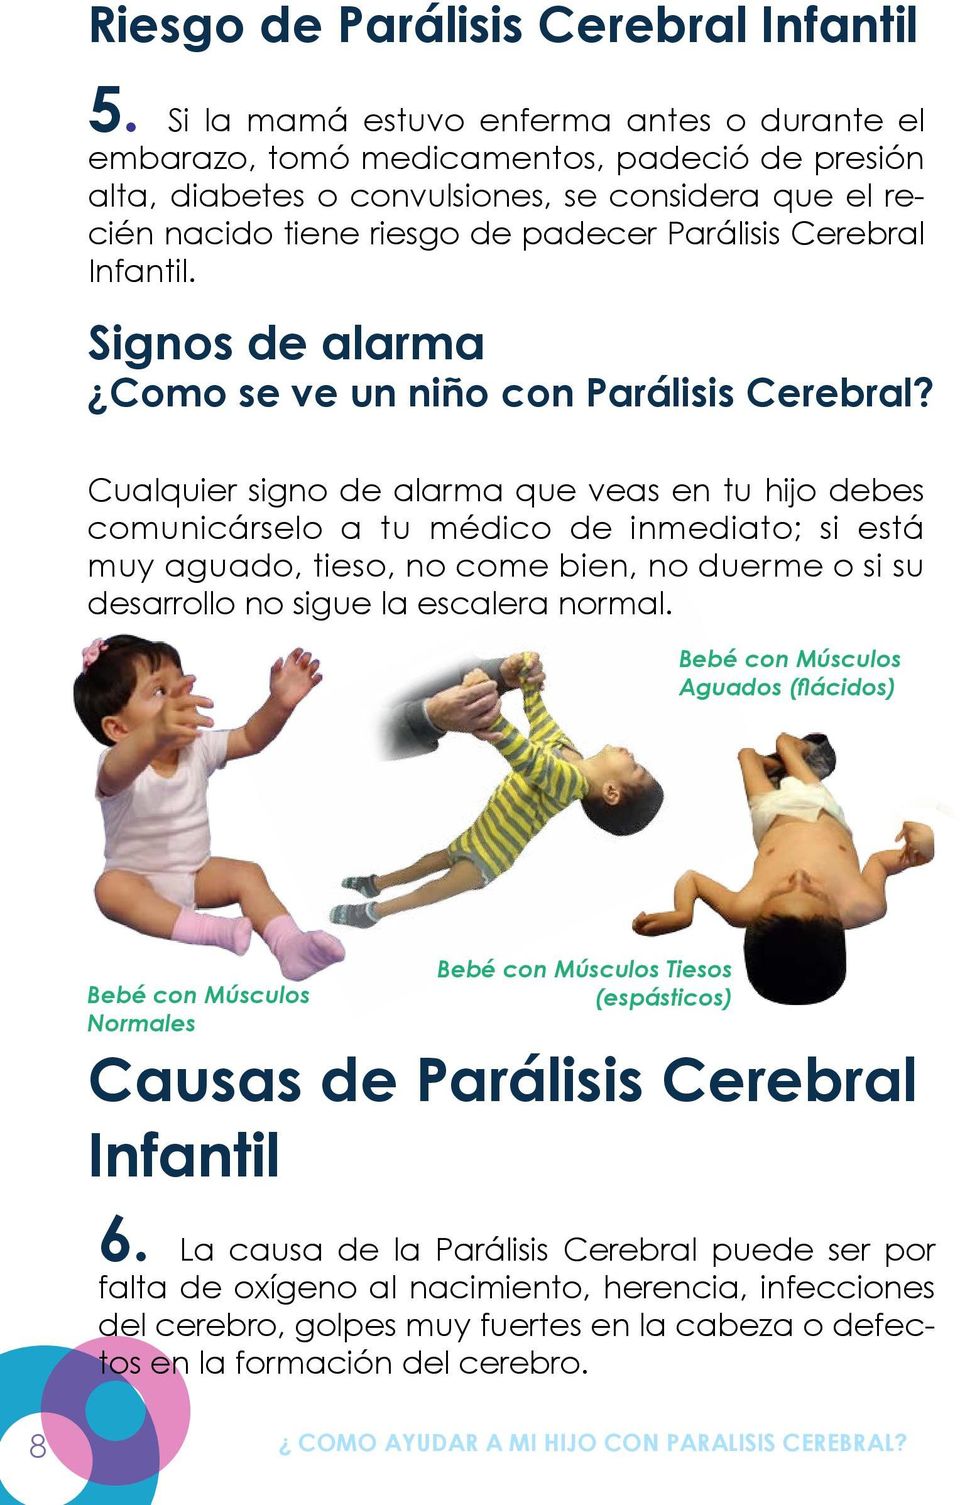 Cerebral Infantil. Signos de alarma Como se ve un niño con Parálisis Cerebral?